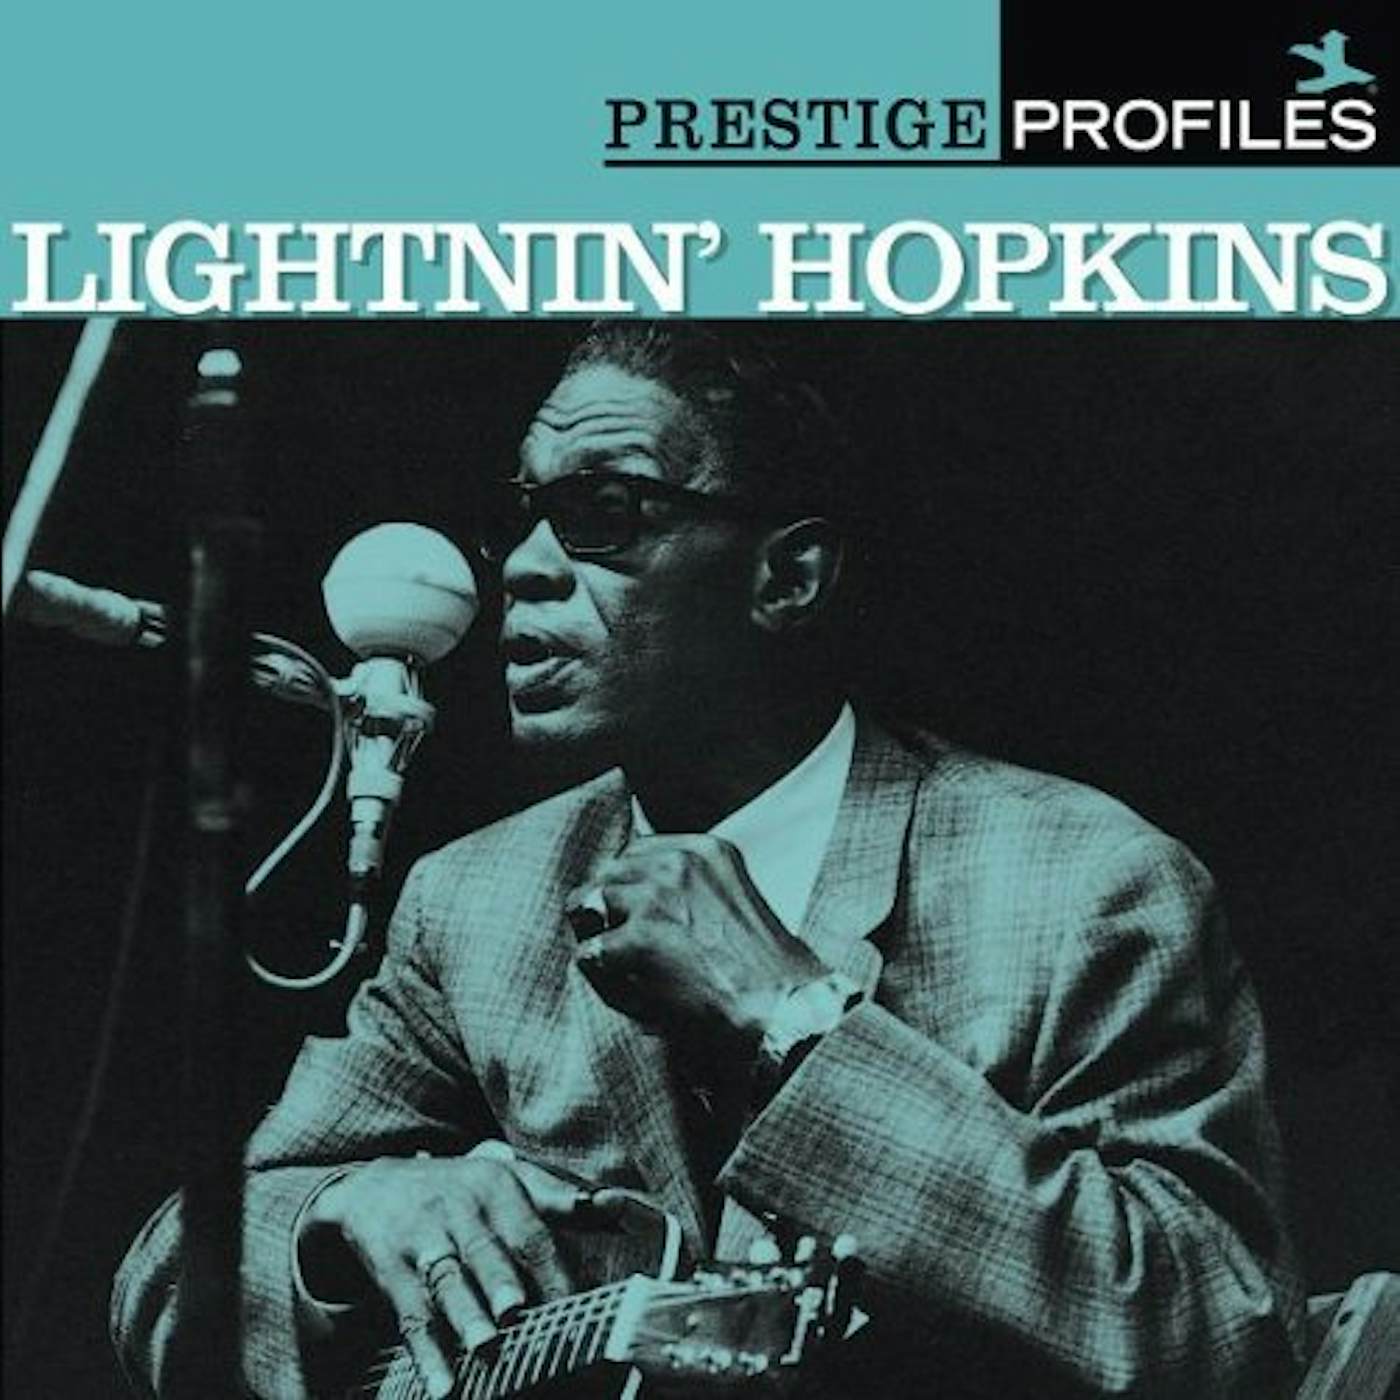 Lightnin' Hopkins PRESTIGE PROFILES 8 CD